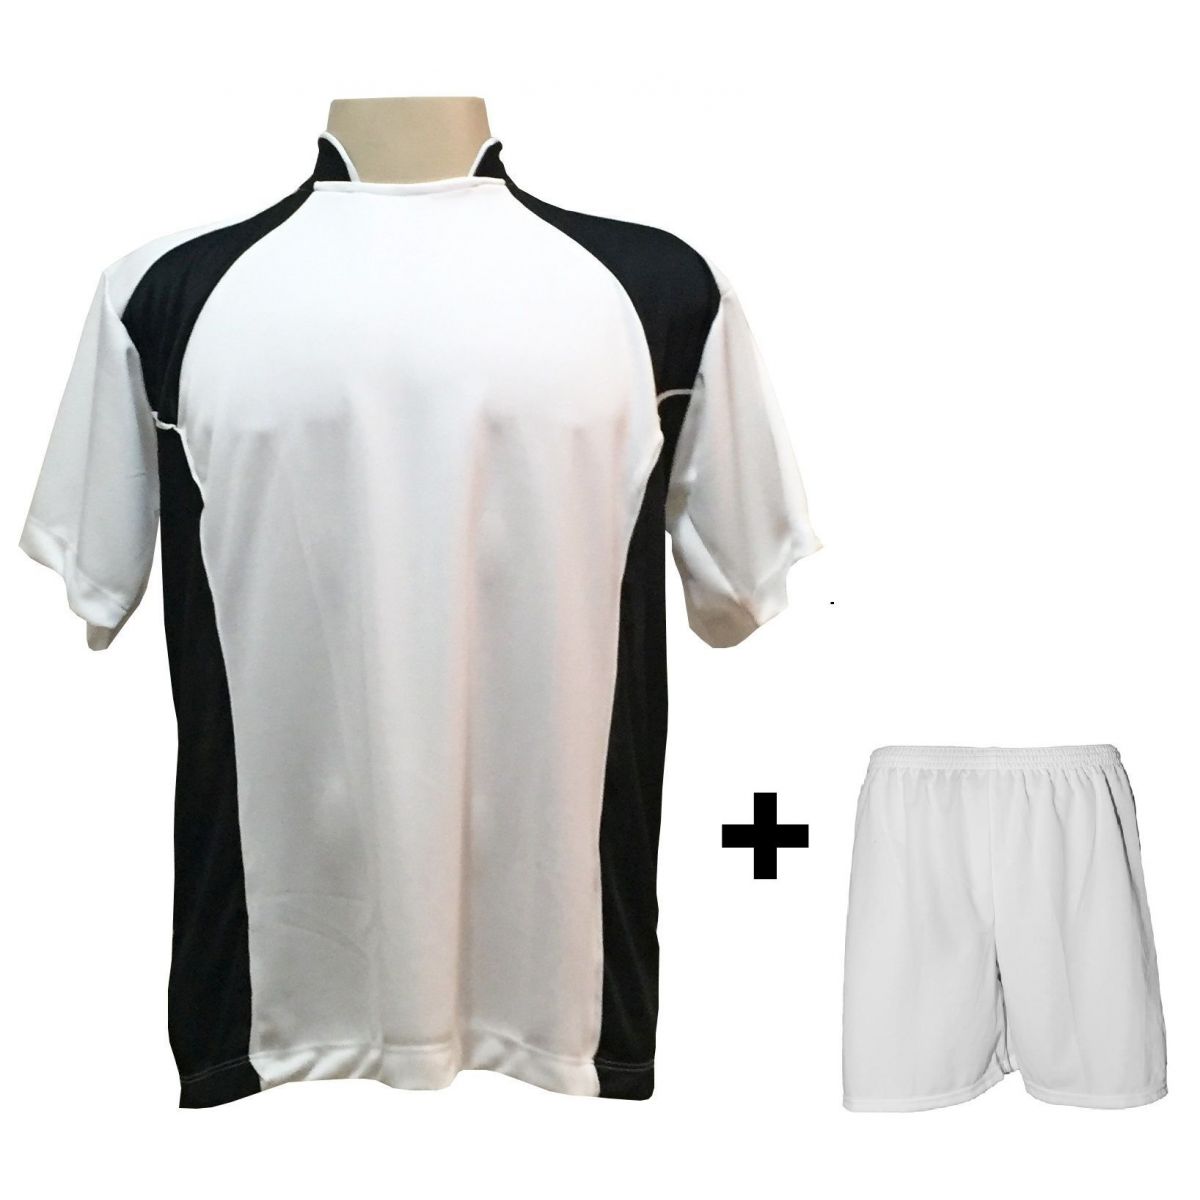 Uniforme Esportivo com 14 camisas modelo Suécia Branco/Preto + 14 calções modelo Madrid + 1 Goleiro + Brindes